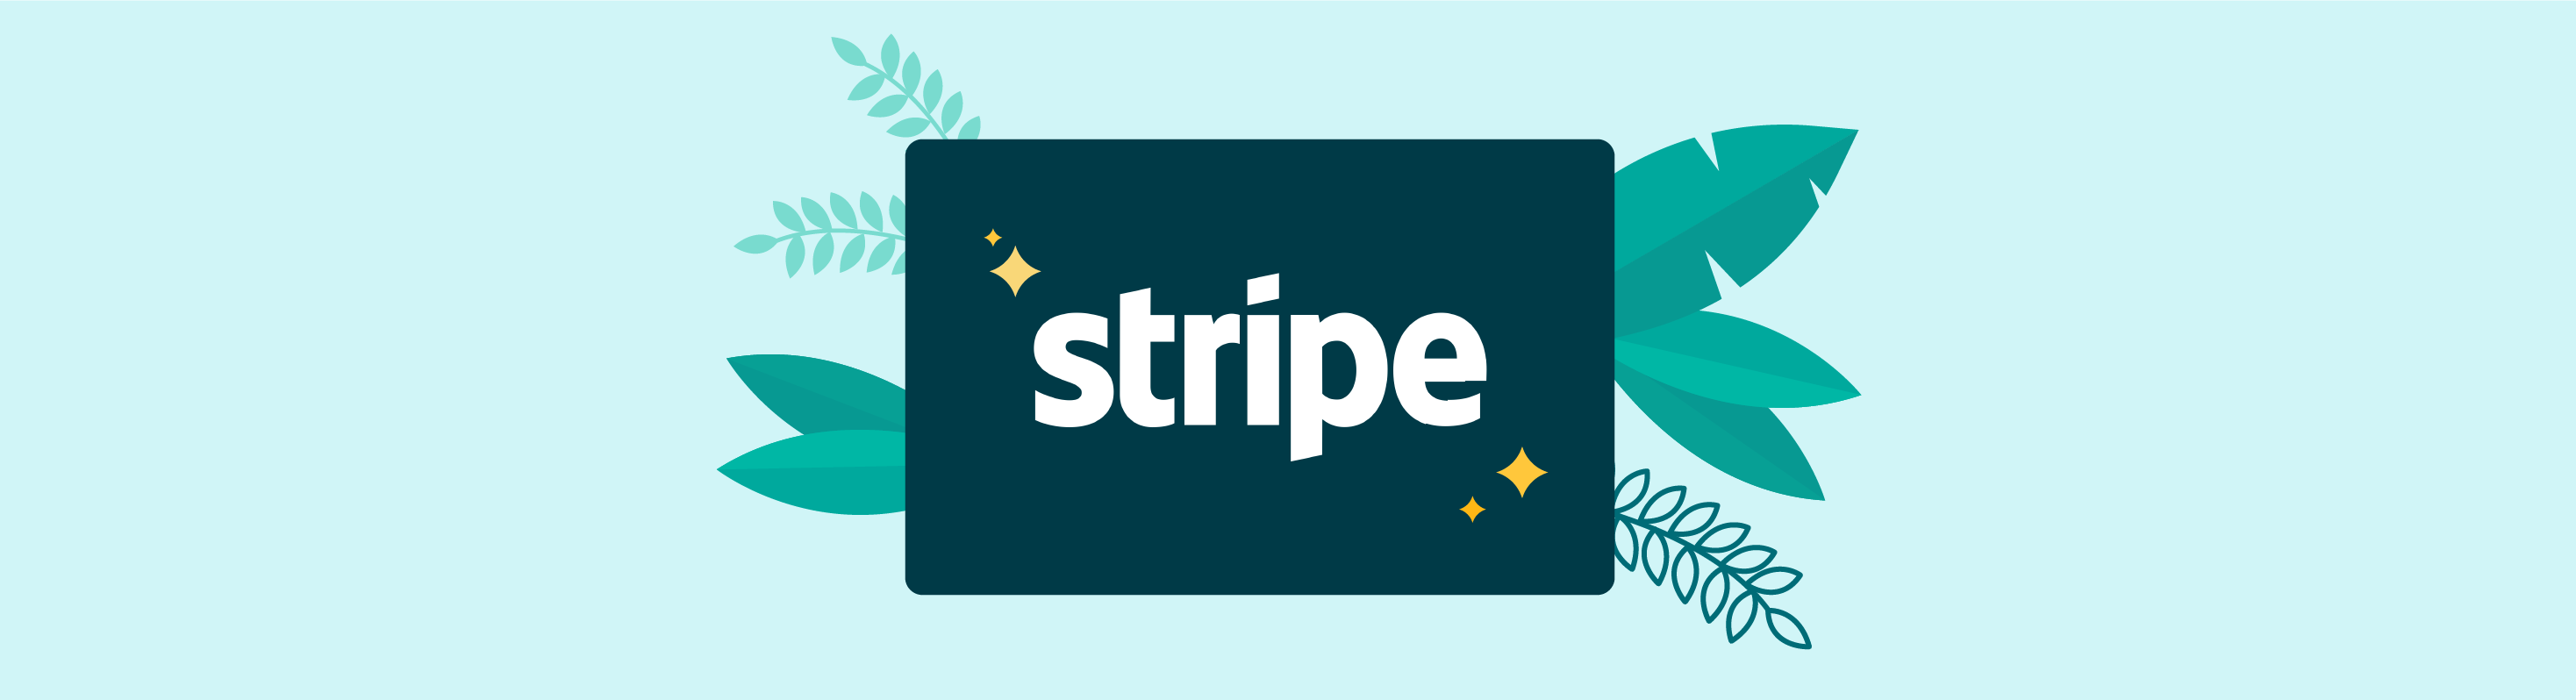 Blog header image with stylized Stripe logo